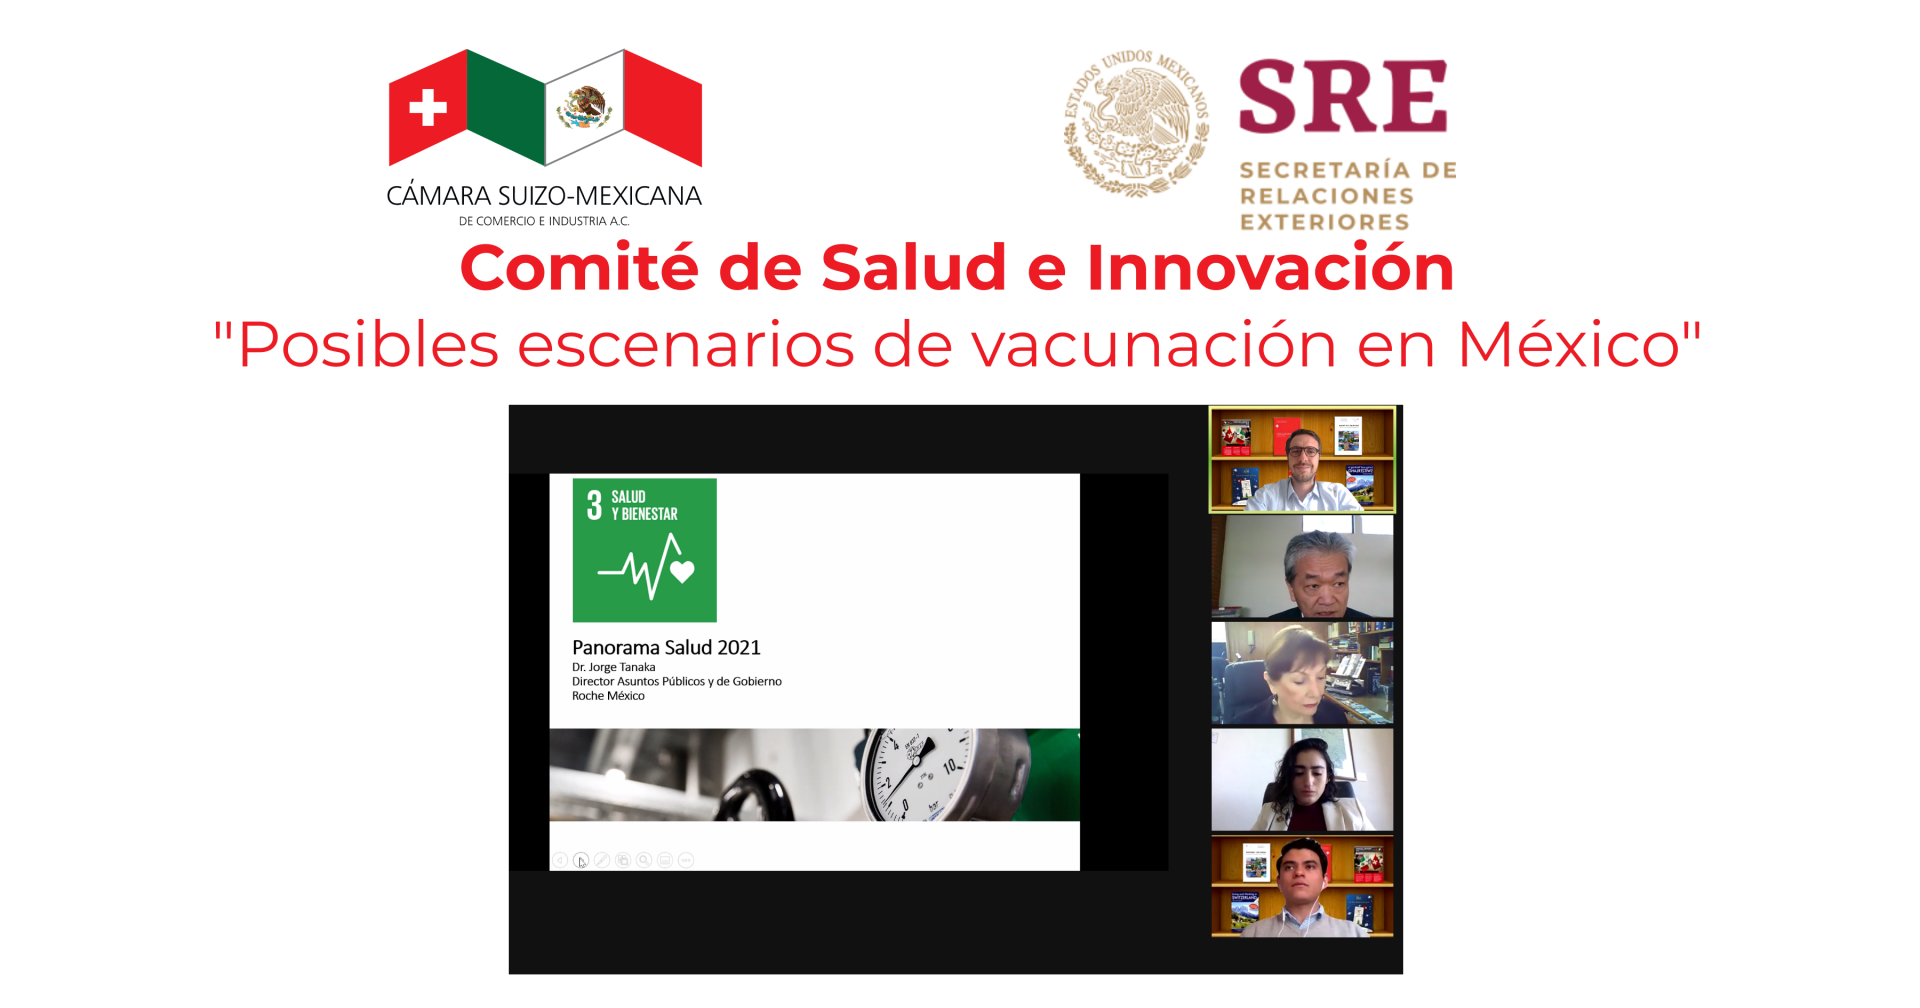 Posibles escenarios de vacunación en México para 2021